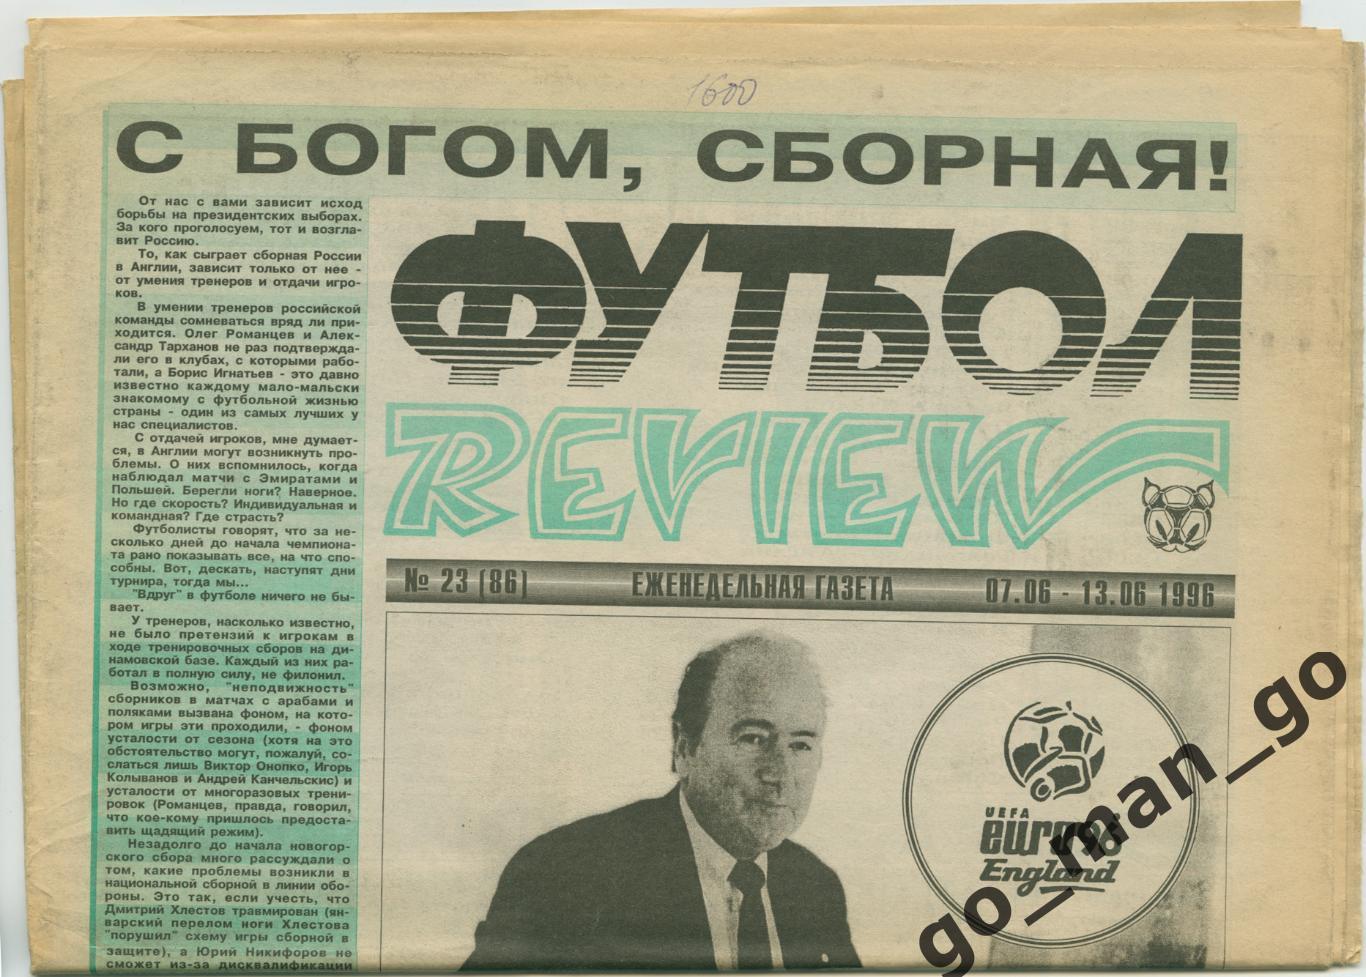 Еженедельник Футбол-Review (Футбол-Ревю), 07-13.06.1996, № 23.